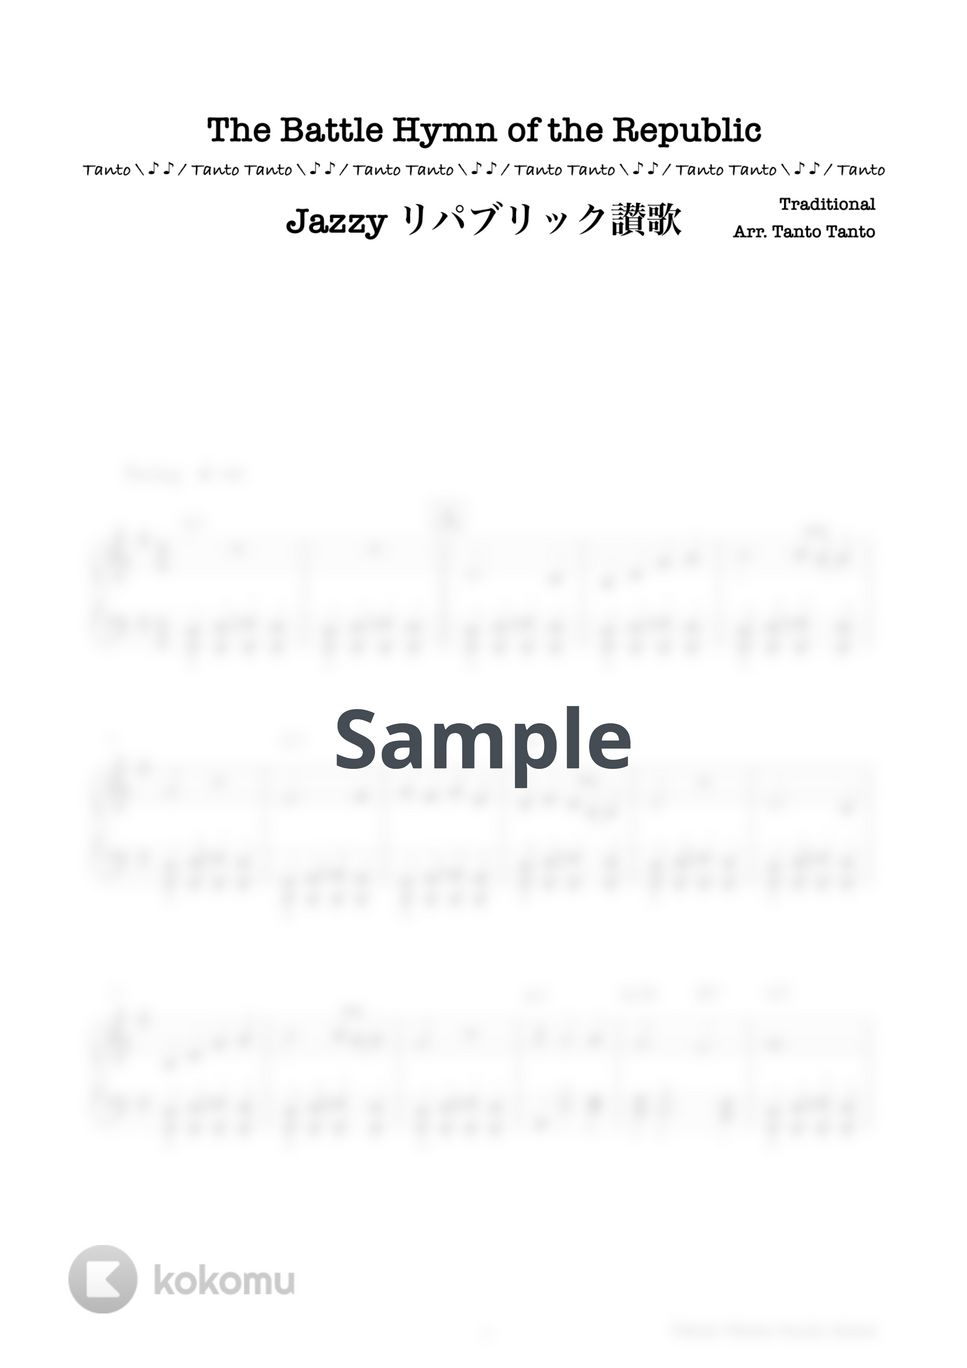 アメリカ民謡 - リパブリック讃歌 (Jazzy The Battle Hymn of the Republic/Piano Solo in C) by Tanto Tanto